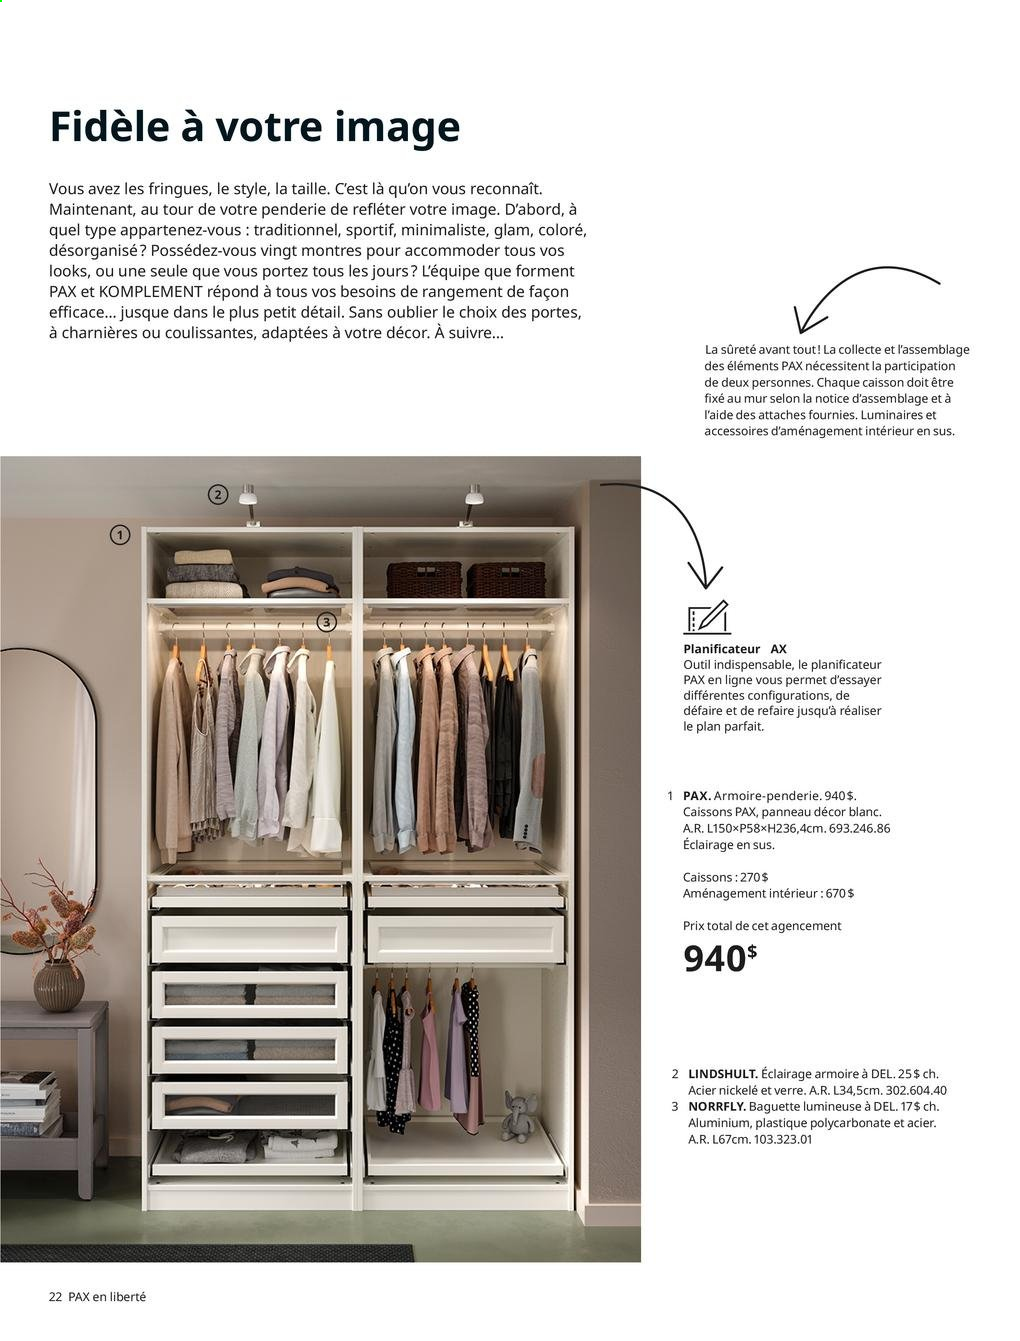 thumbnail - Catalogue IKEA - Produits soldés - armoire, verre, caisson, armoire-penderie, luminaire. Page 22.